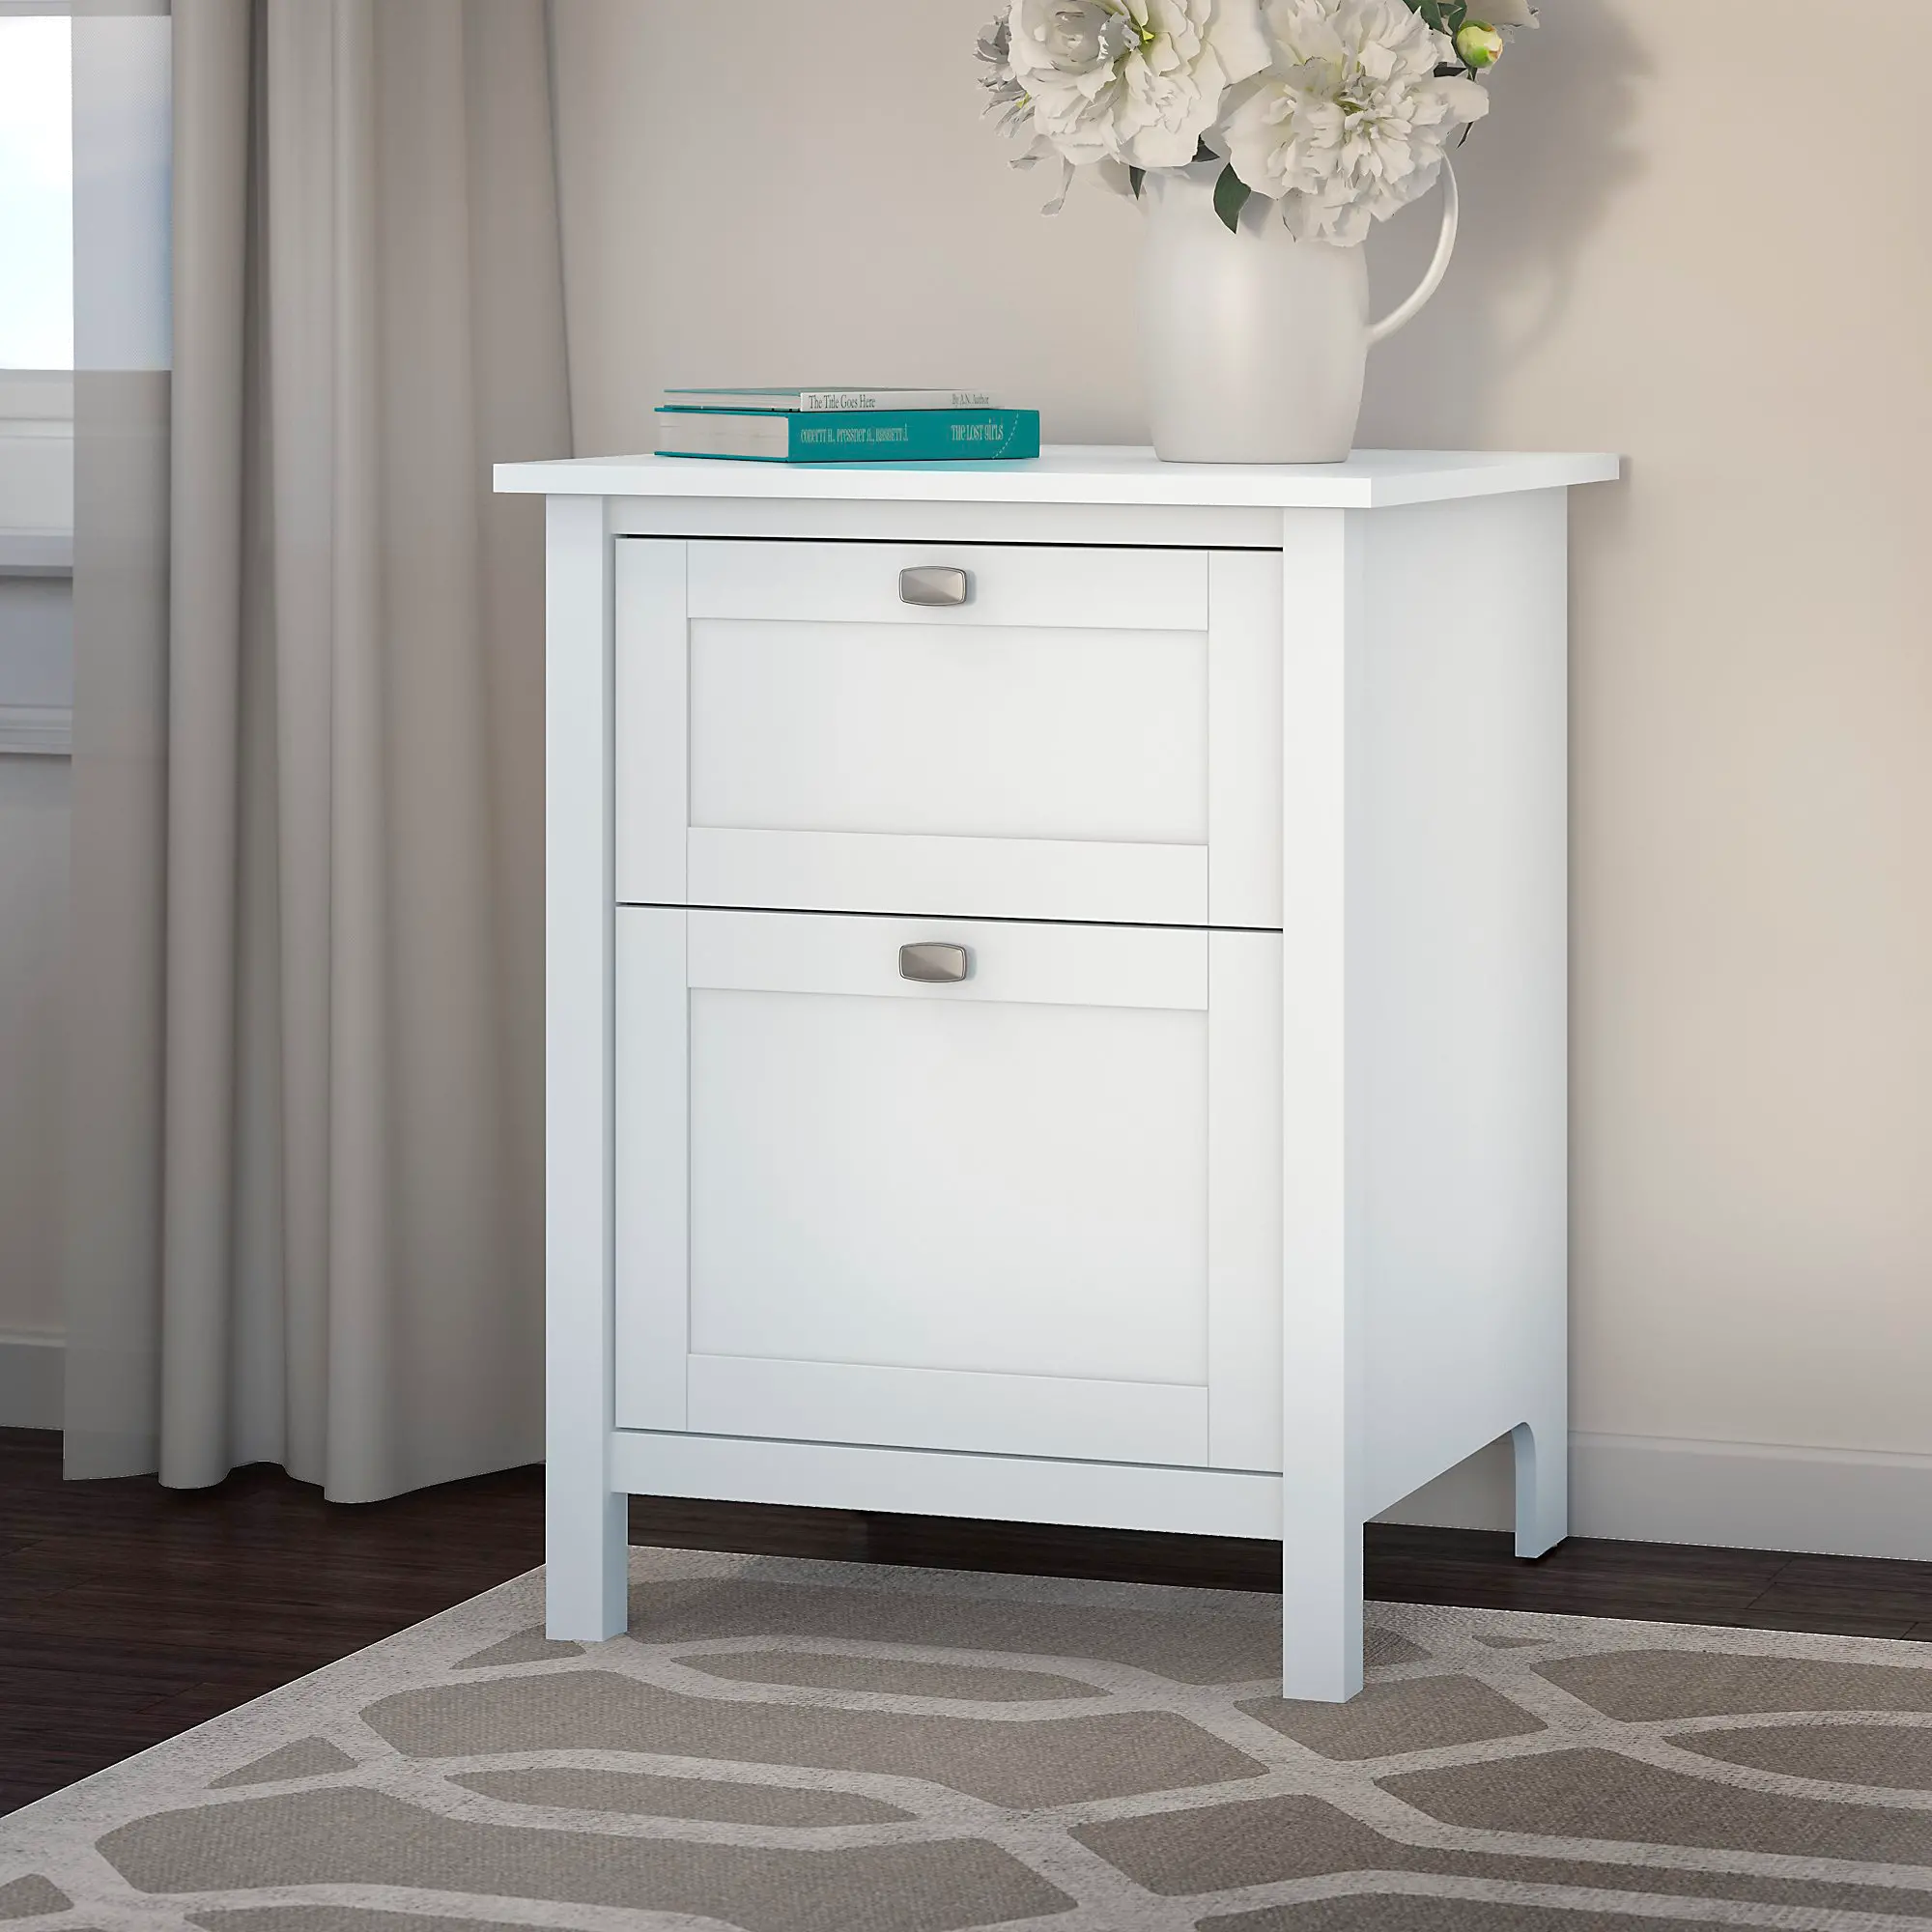 Broadview Pure White File Cabinet - Bush Furniture